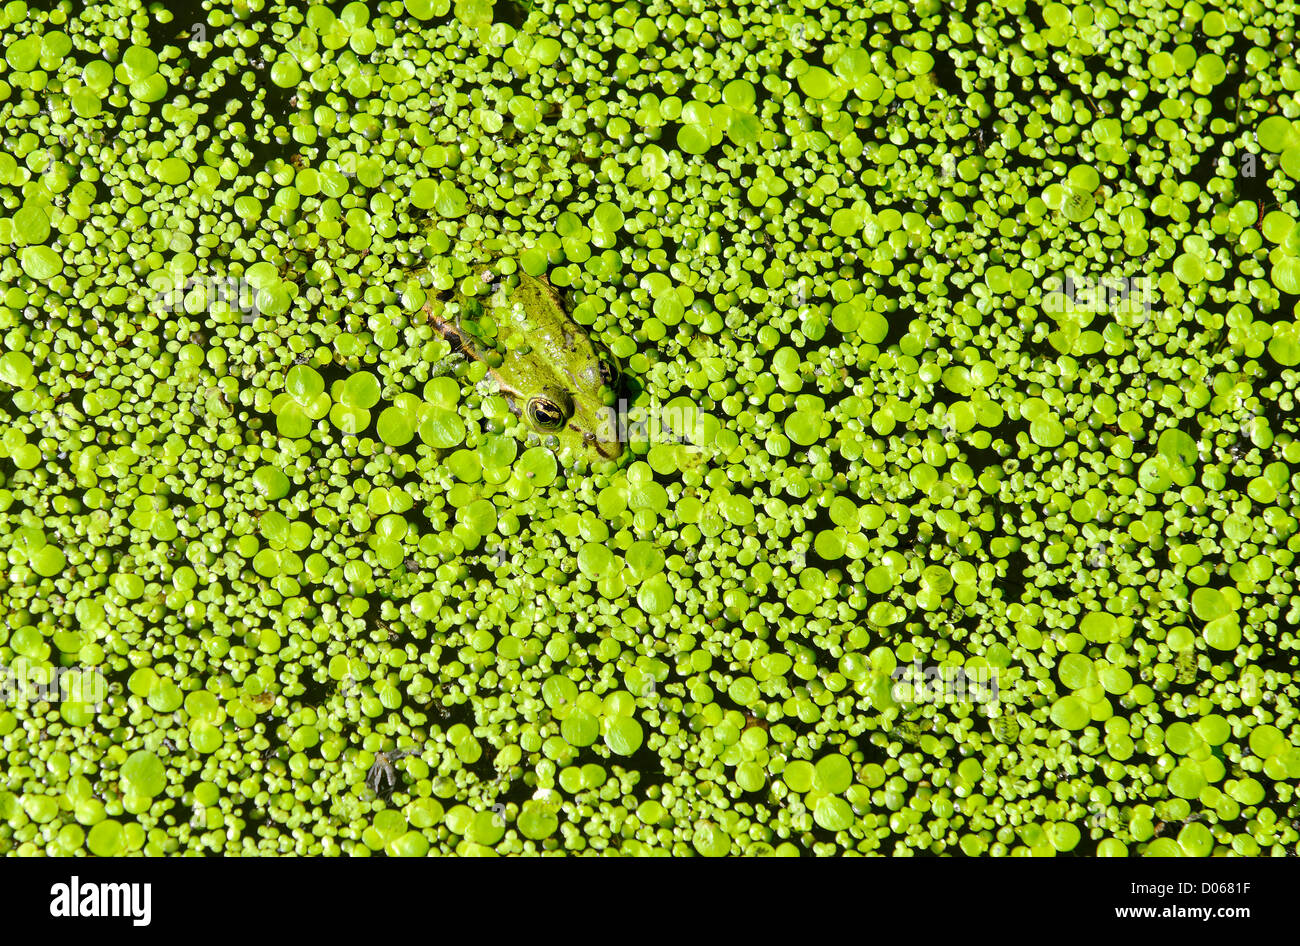 Une grenouille verte dans de l'eau couverts les lenticules Banque D'Images